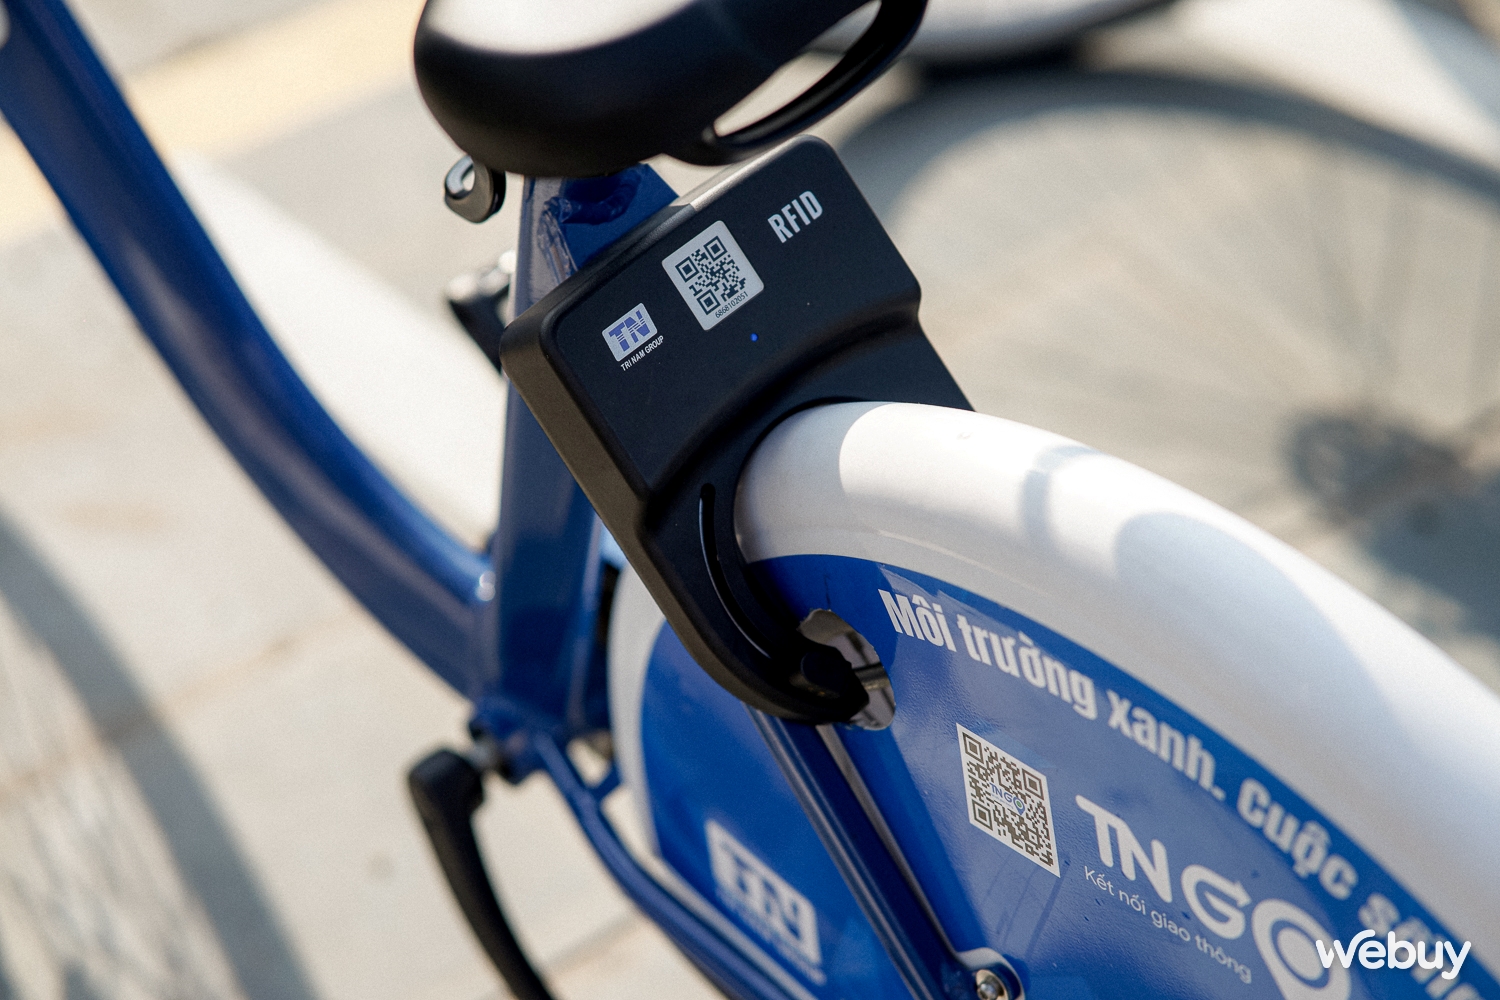 Thử thuê xe đạp TNGo ở Hải Phòng: Cước rẻ, đi vui, còn bất cập nhưng xứng đáng được nhân rộng - Ảnh 6.